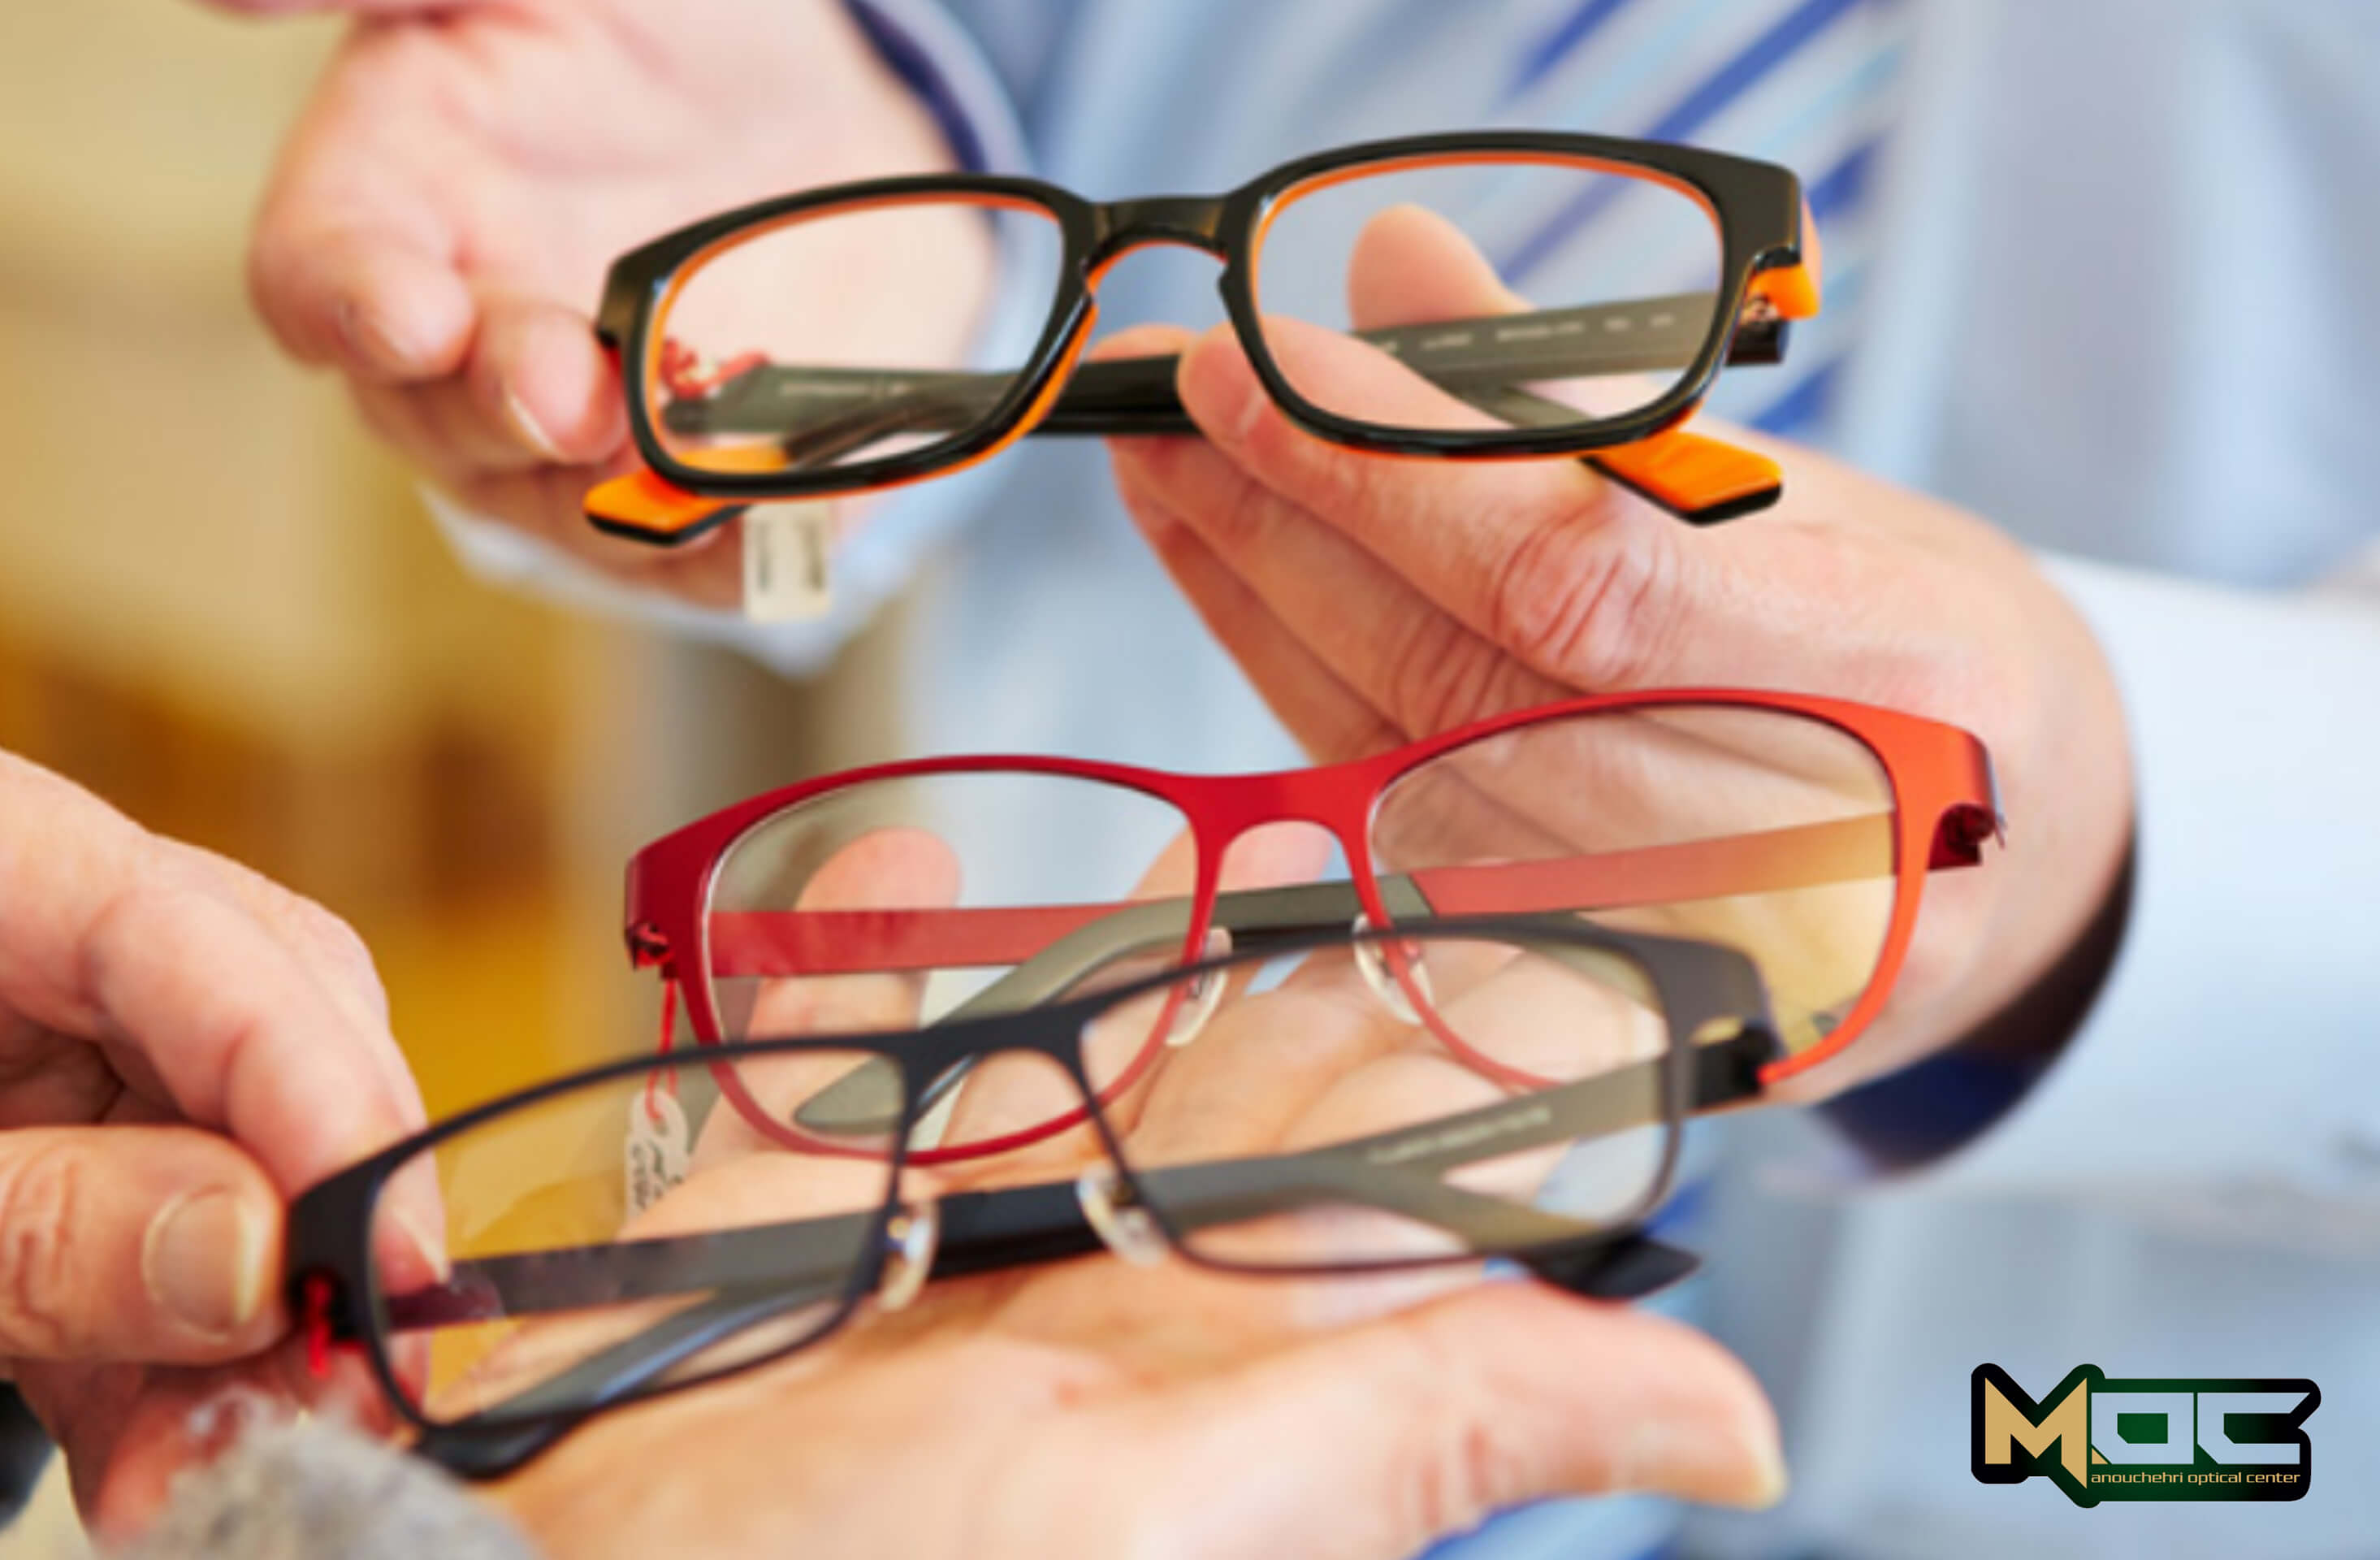 چه معایب و مزایایی برای عینک وجود دارد